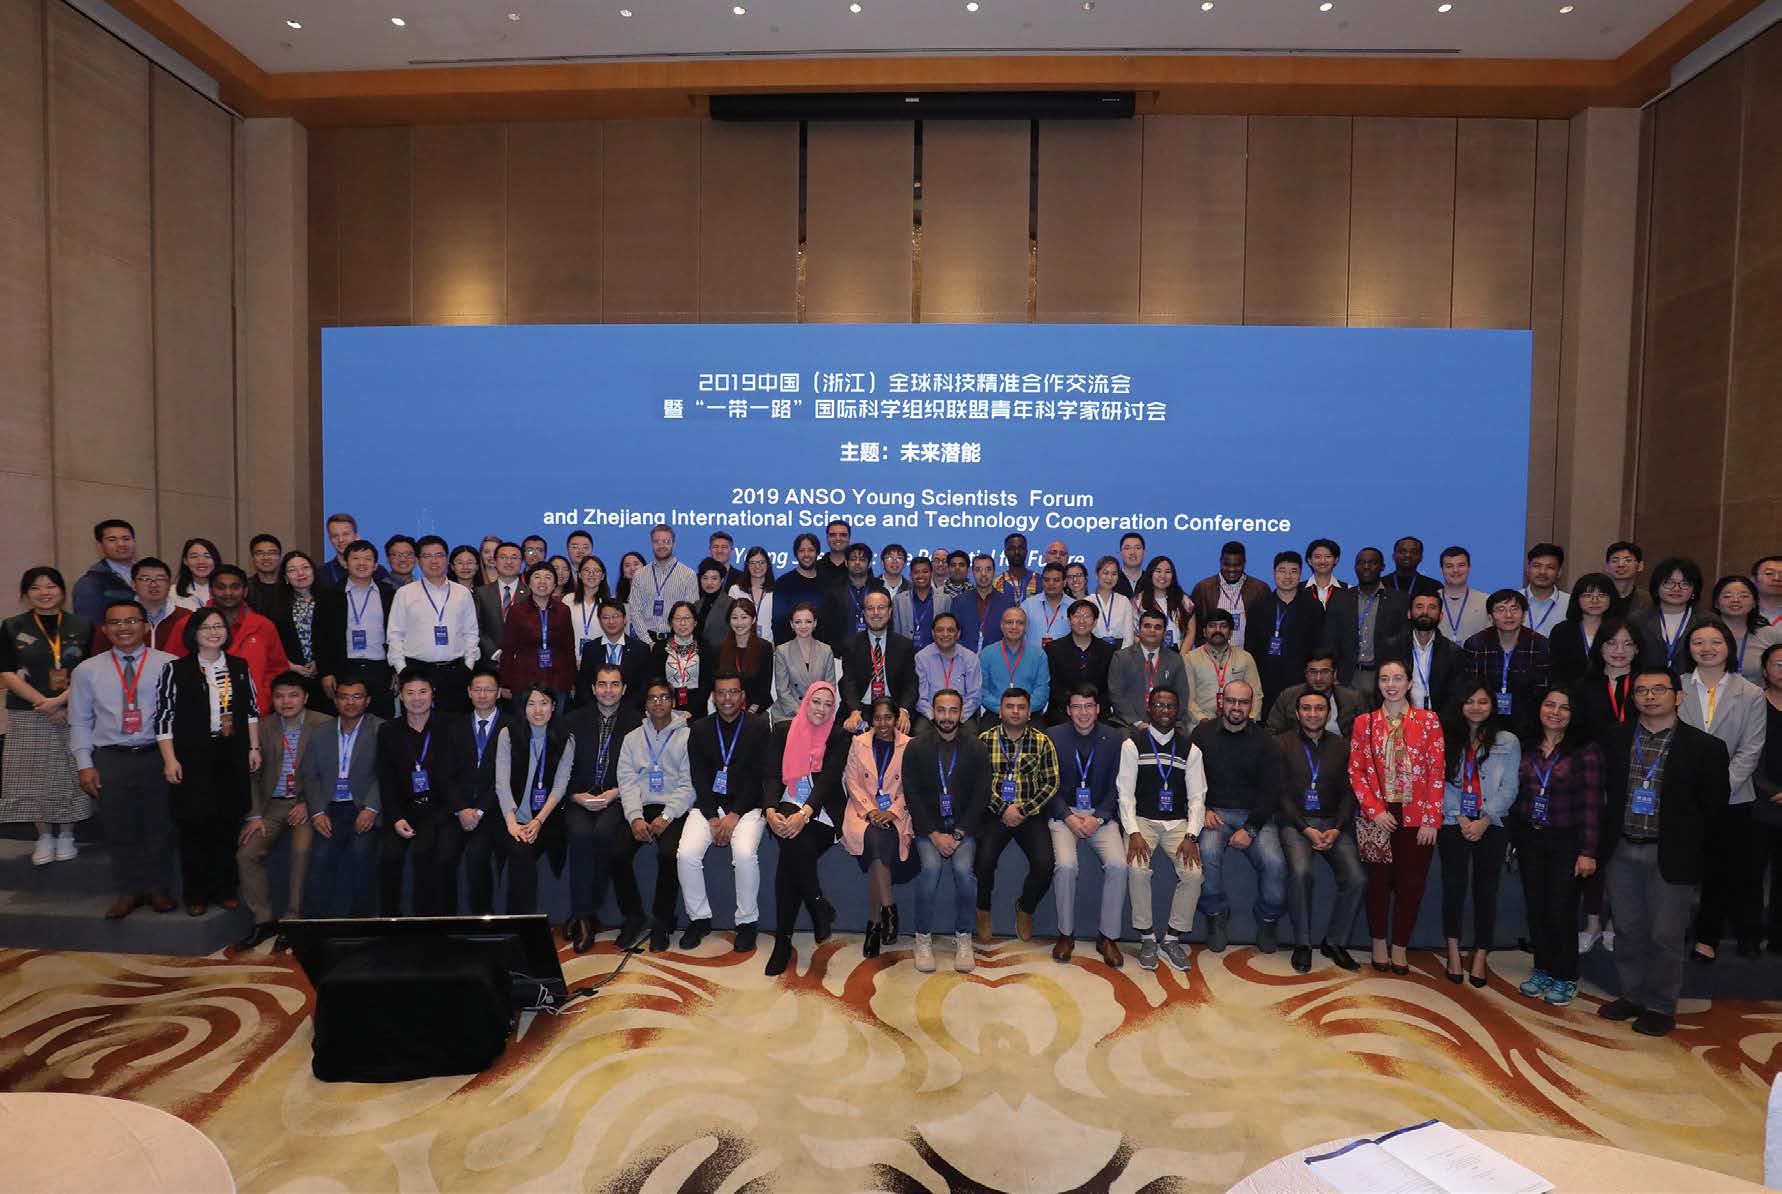 İlk ANSO Genç Bilim İnsanları Forumu 9 Kasım 2019 tarihinde Hangzhou'da gerçekleştirildi. (ANSO, 2019) 